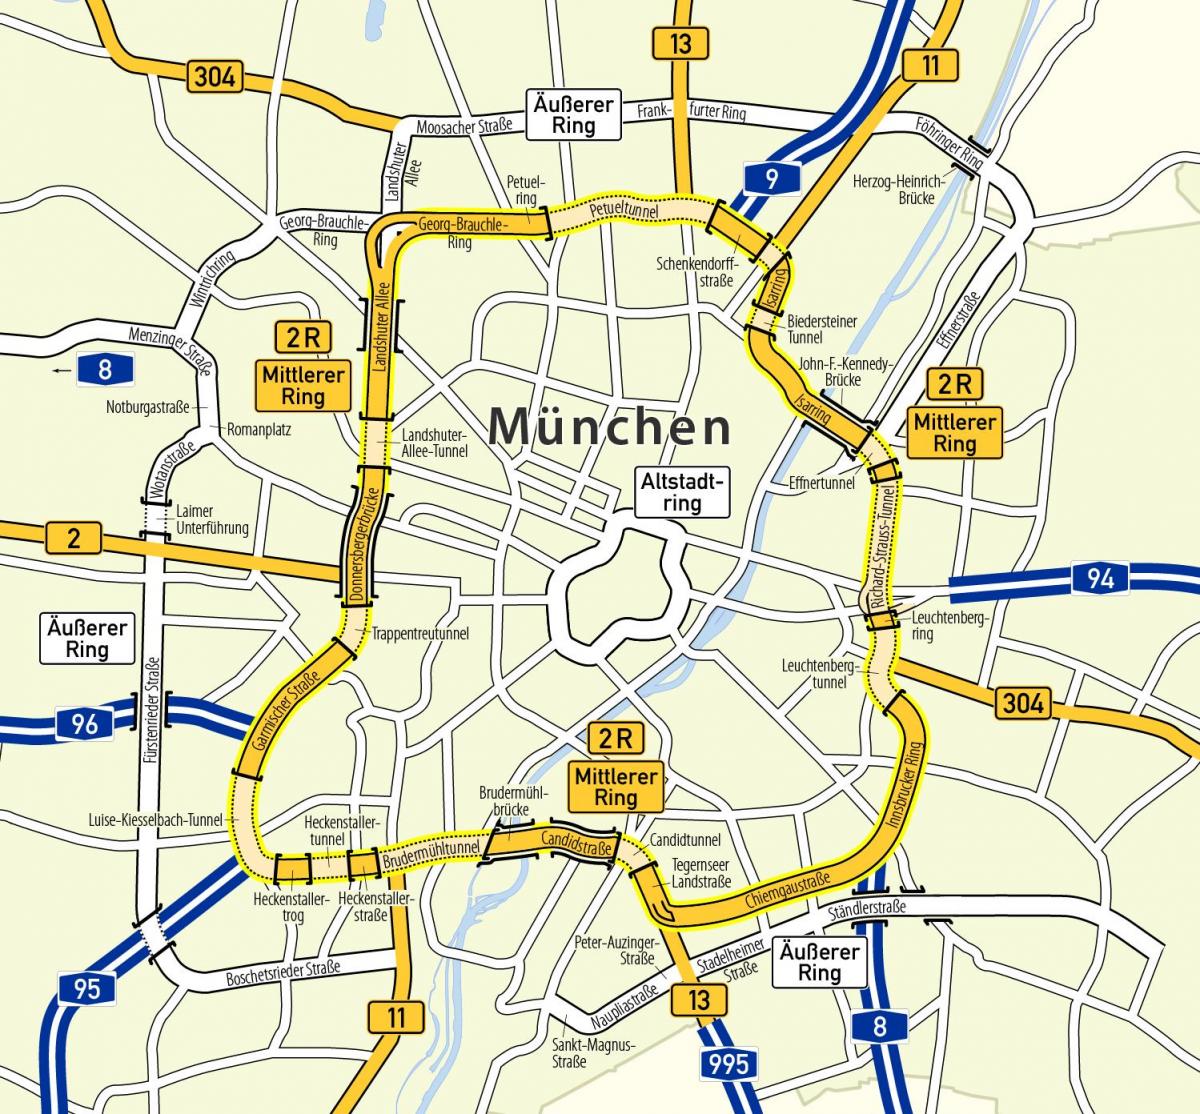 munchen રિંગ નકશો